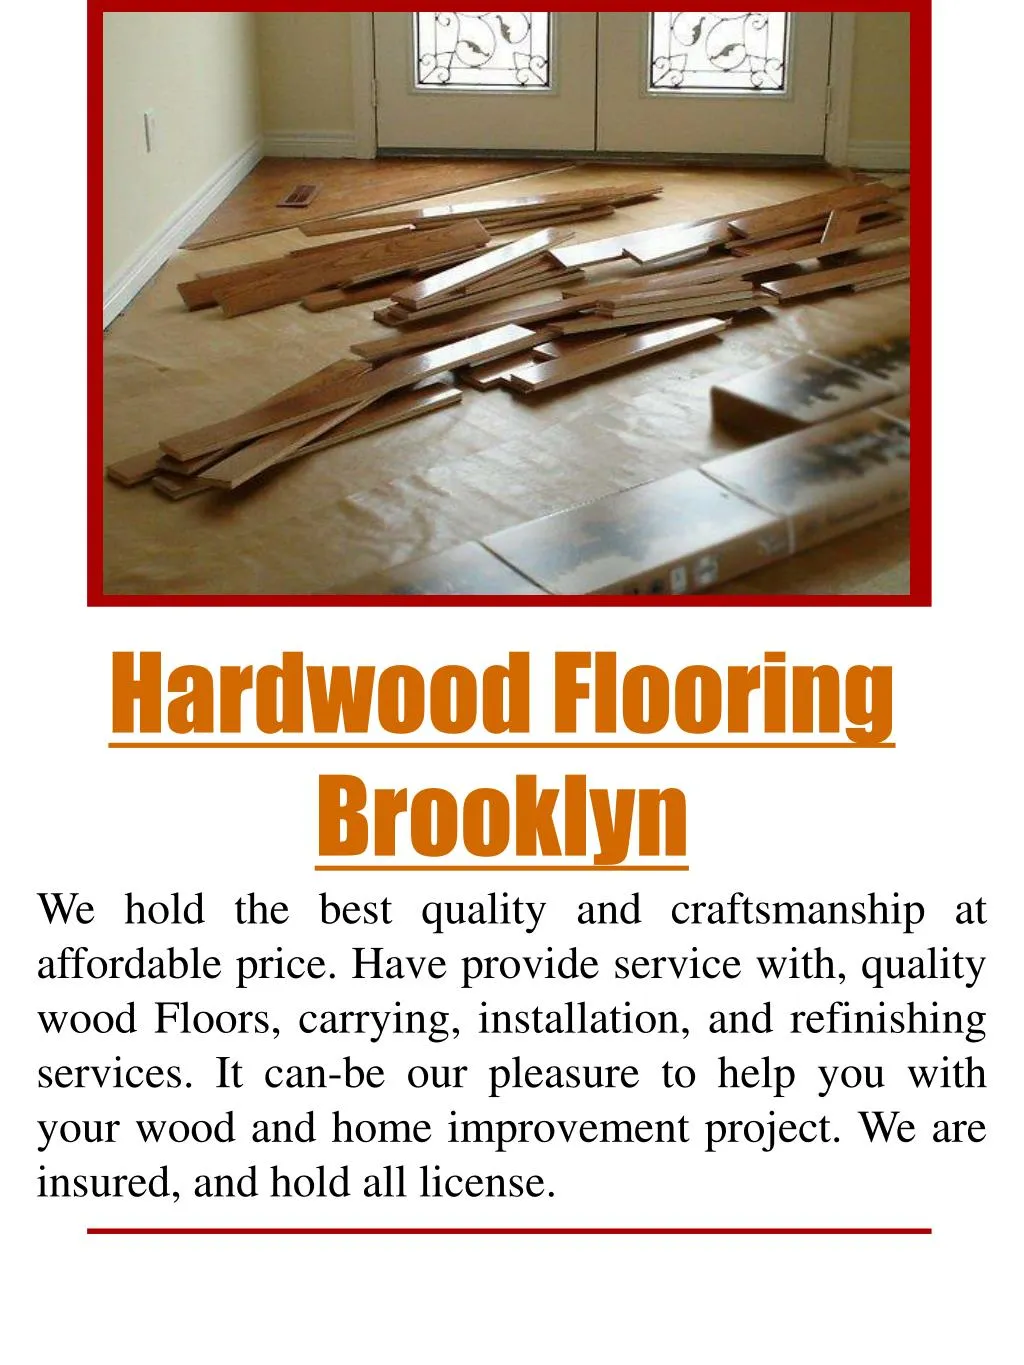 hardwood flooring brooklyn